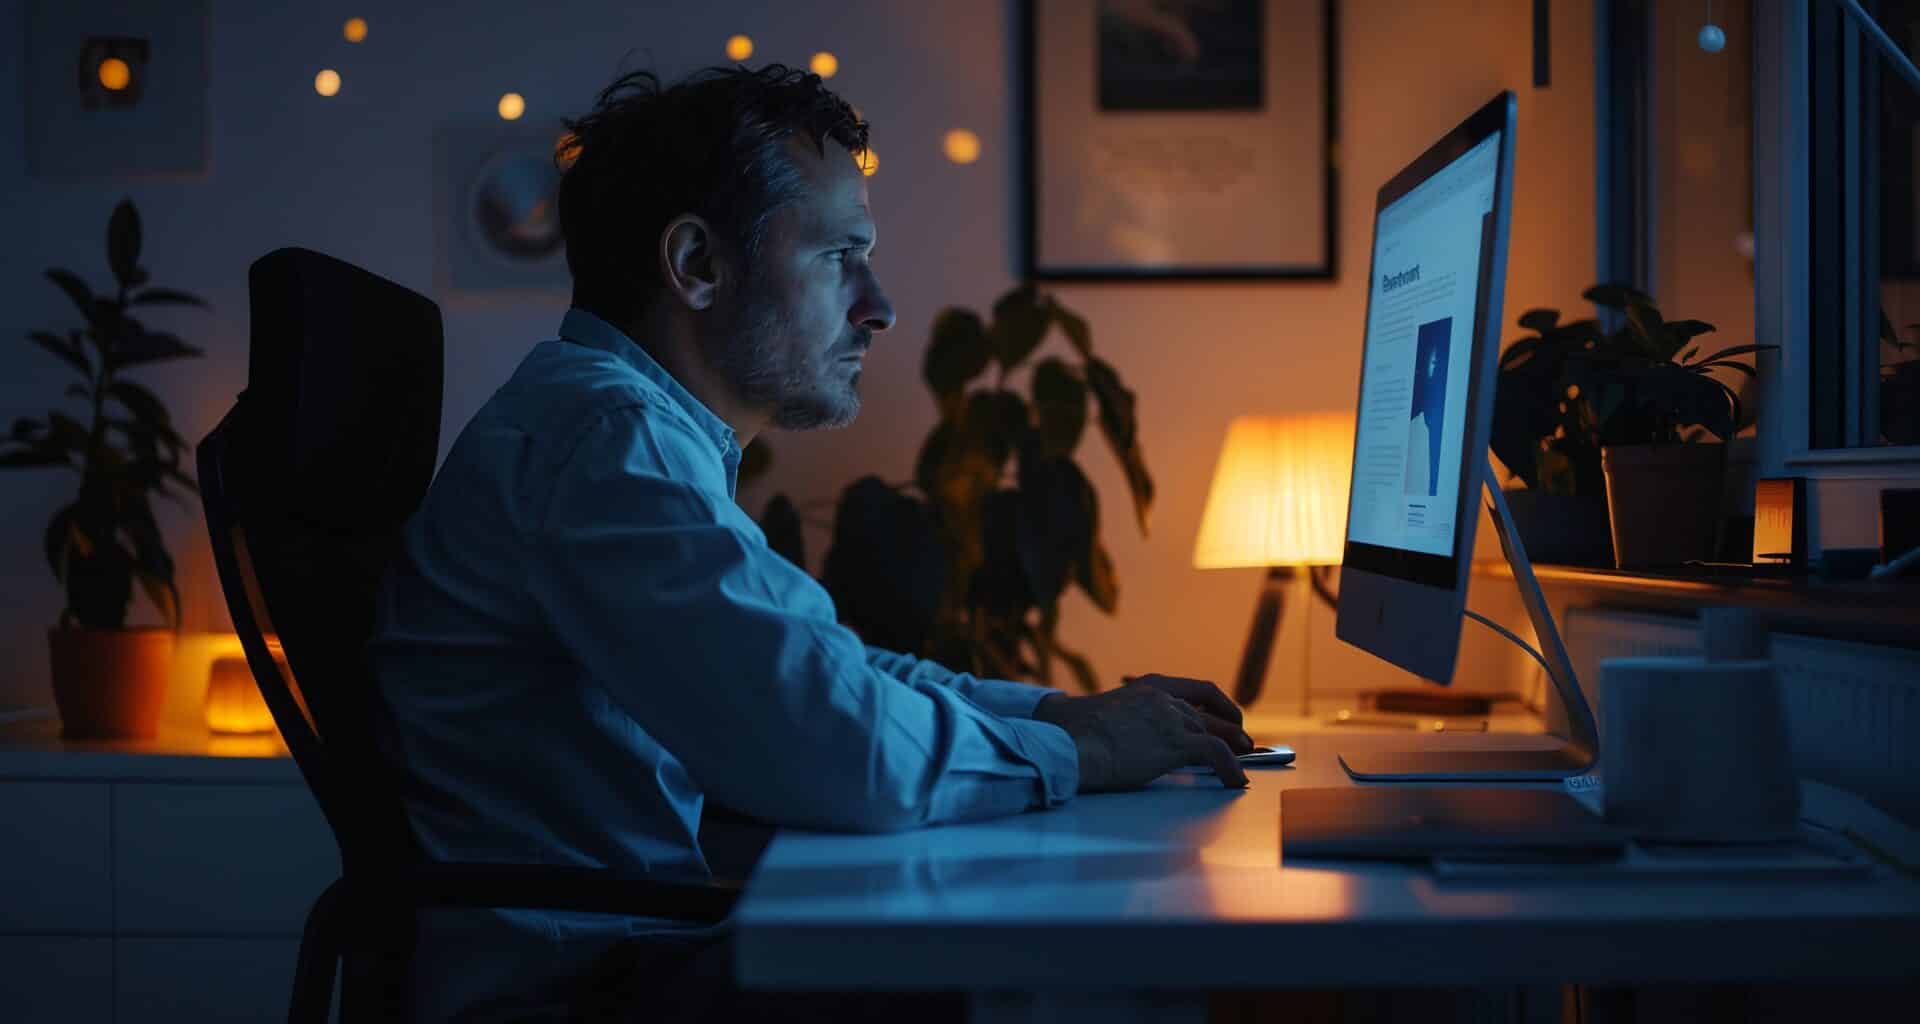 Homem trabalhando/lendo em iMac num ambiente pouco iluminado